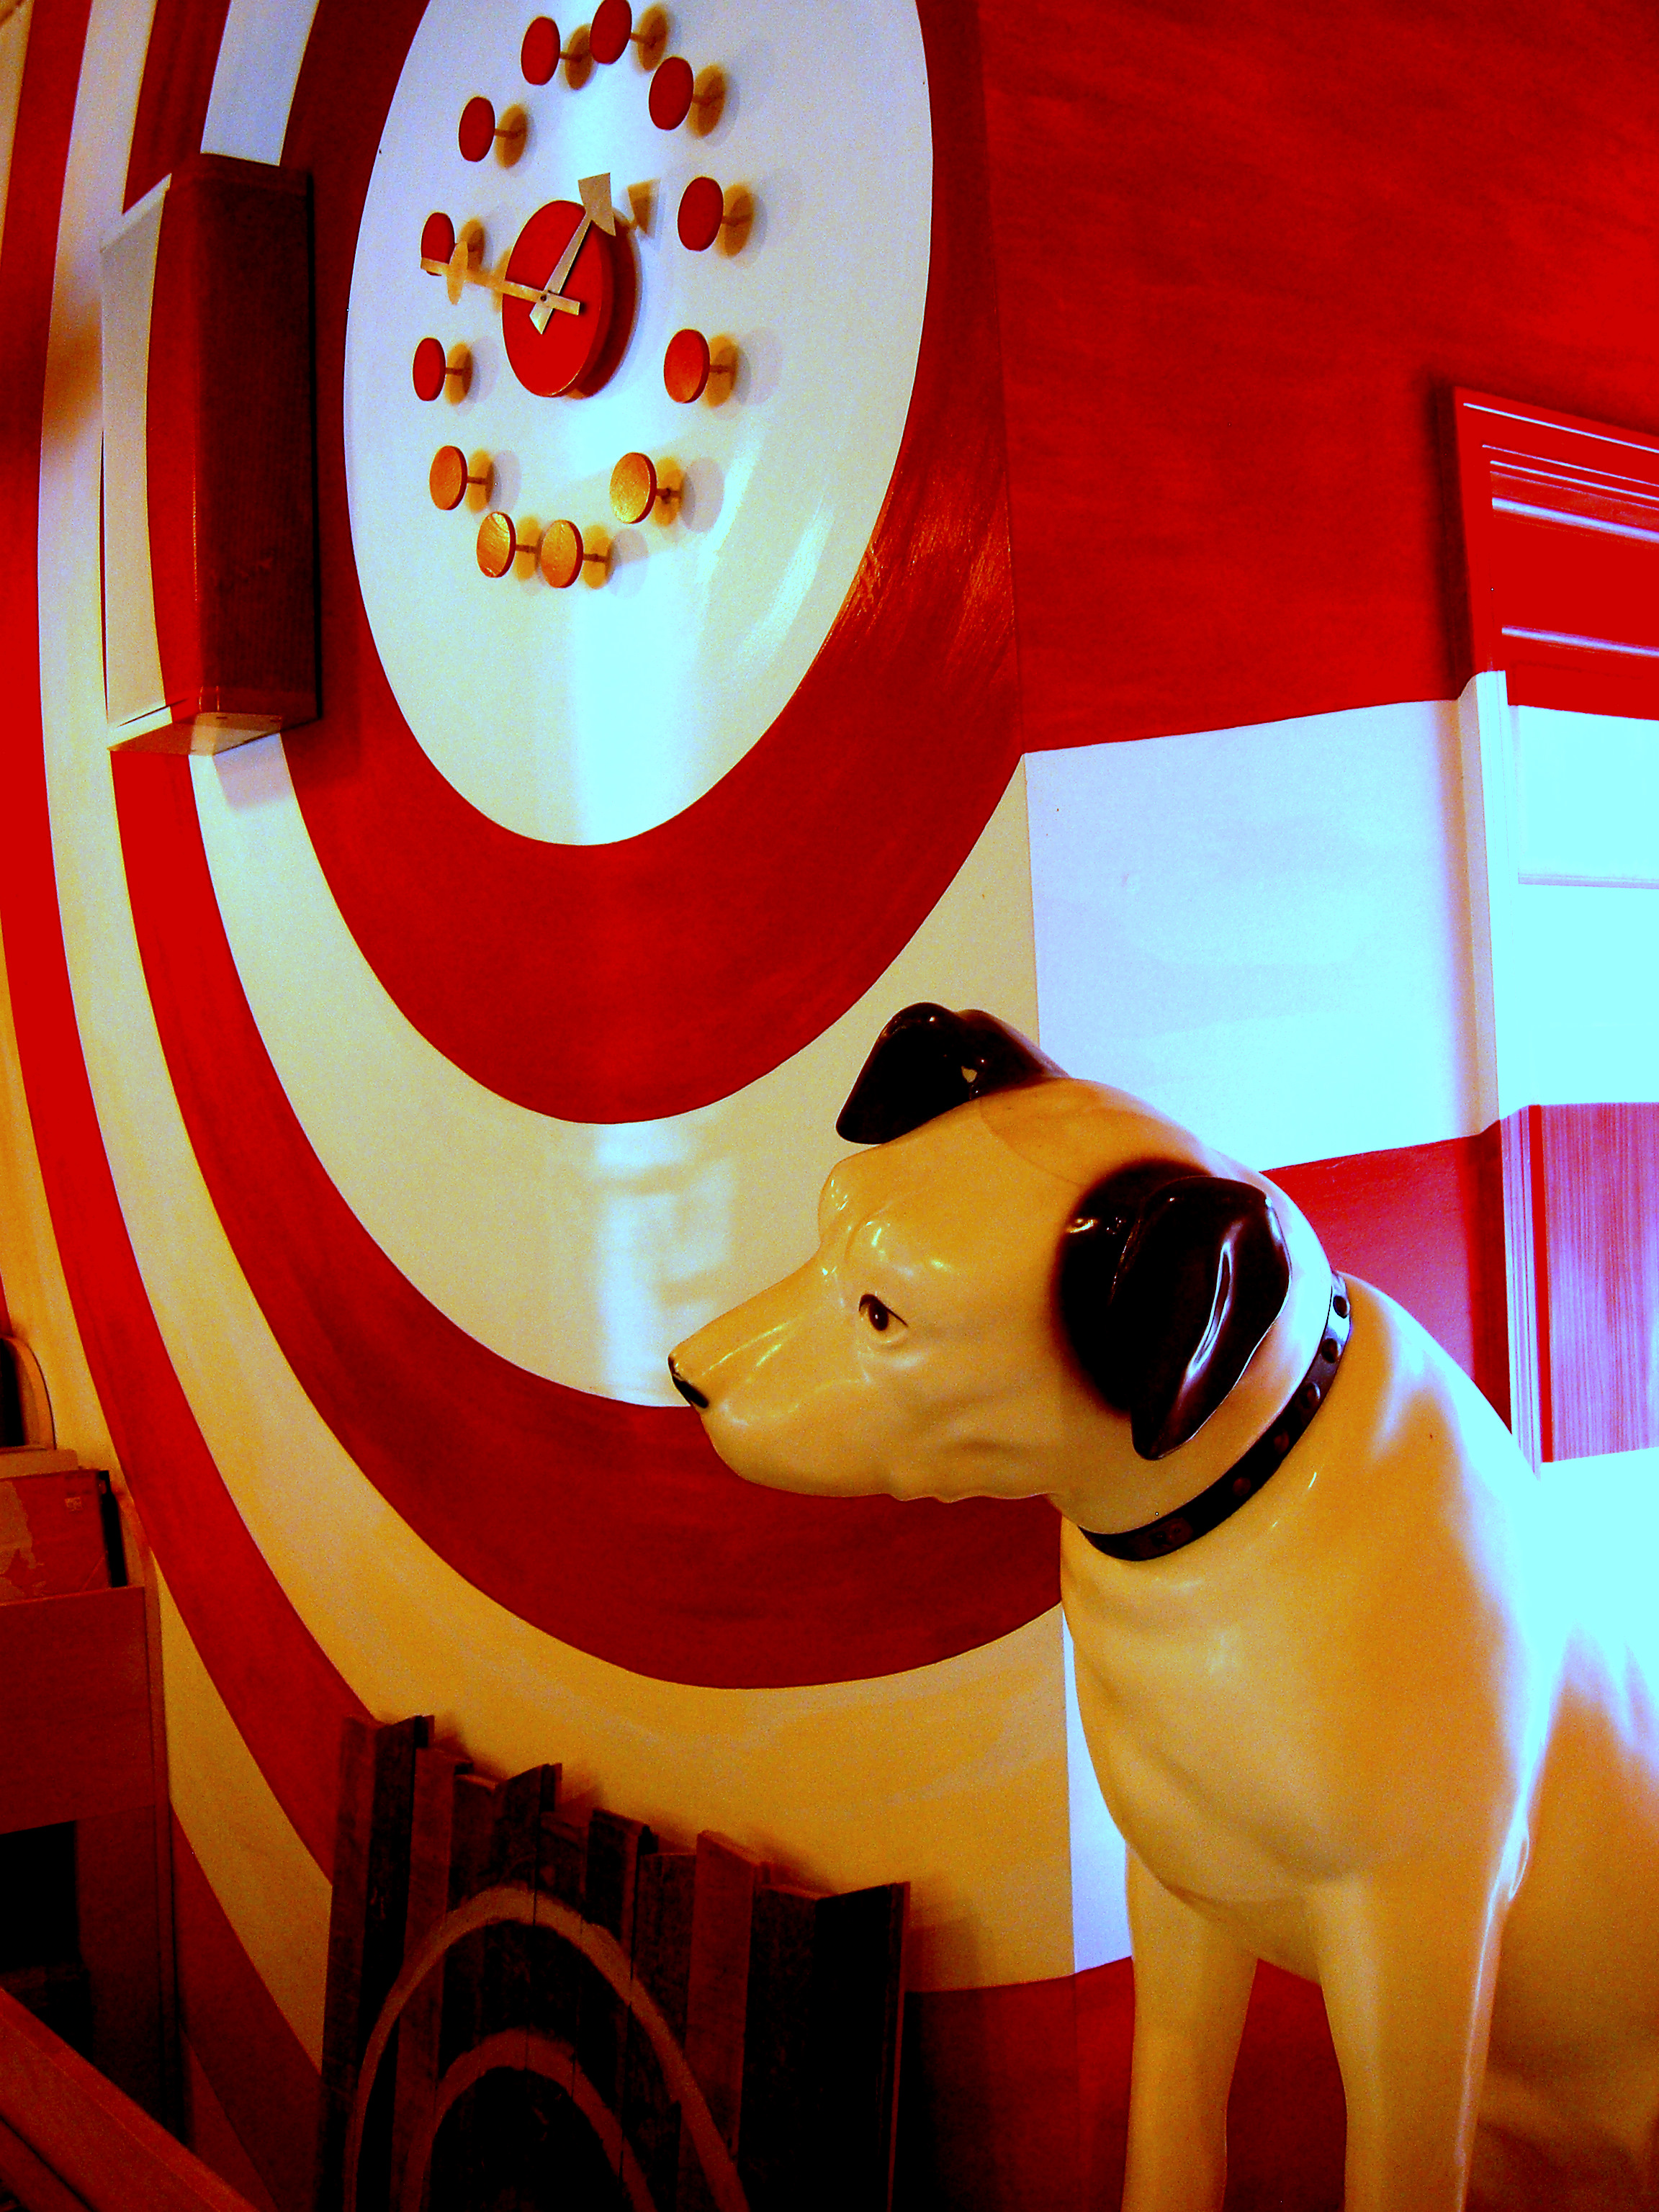 Milwaukee, Bullseye, Clock, Curious, Dog, HQ Photo